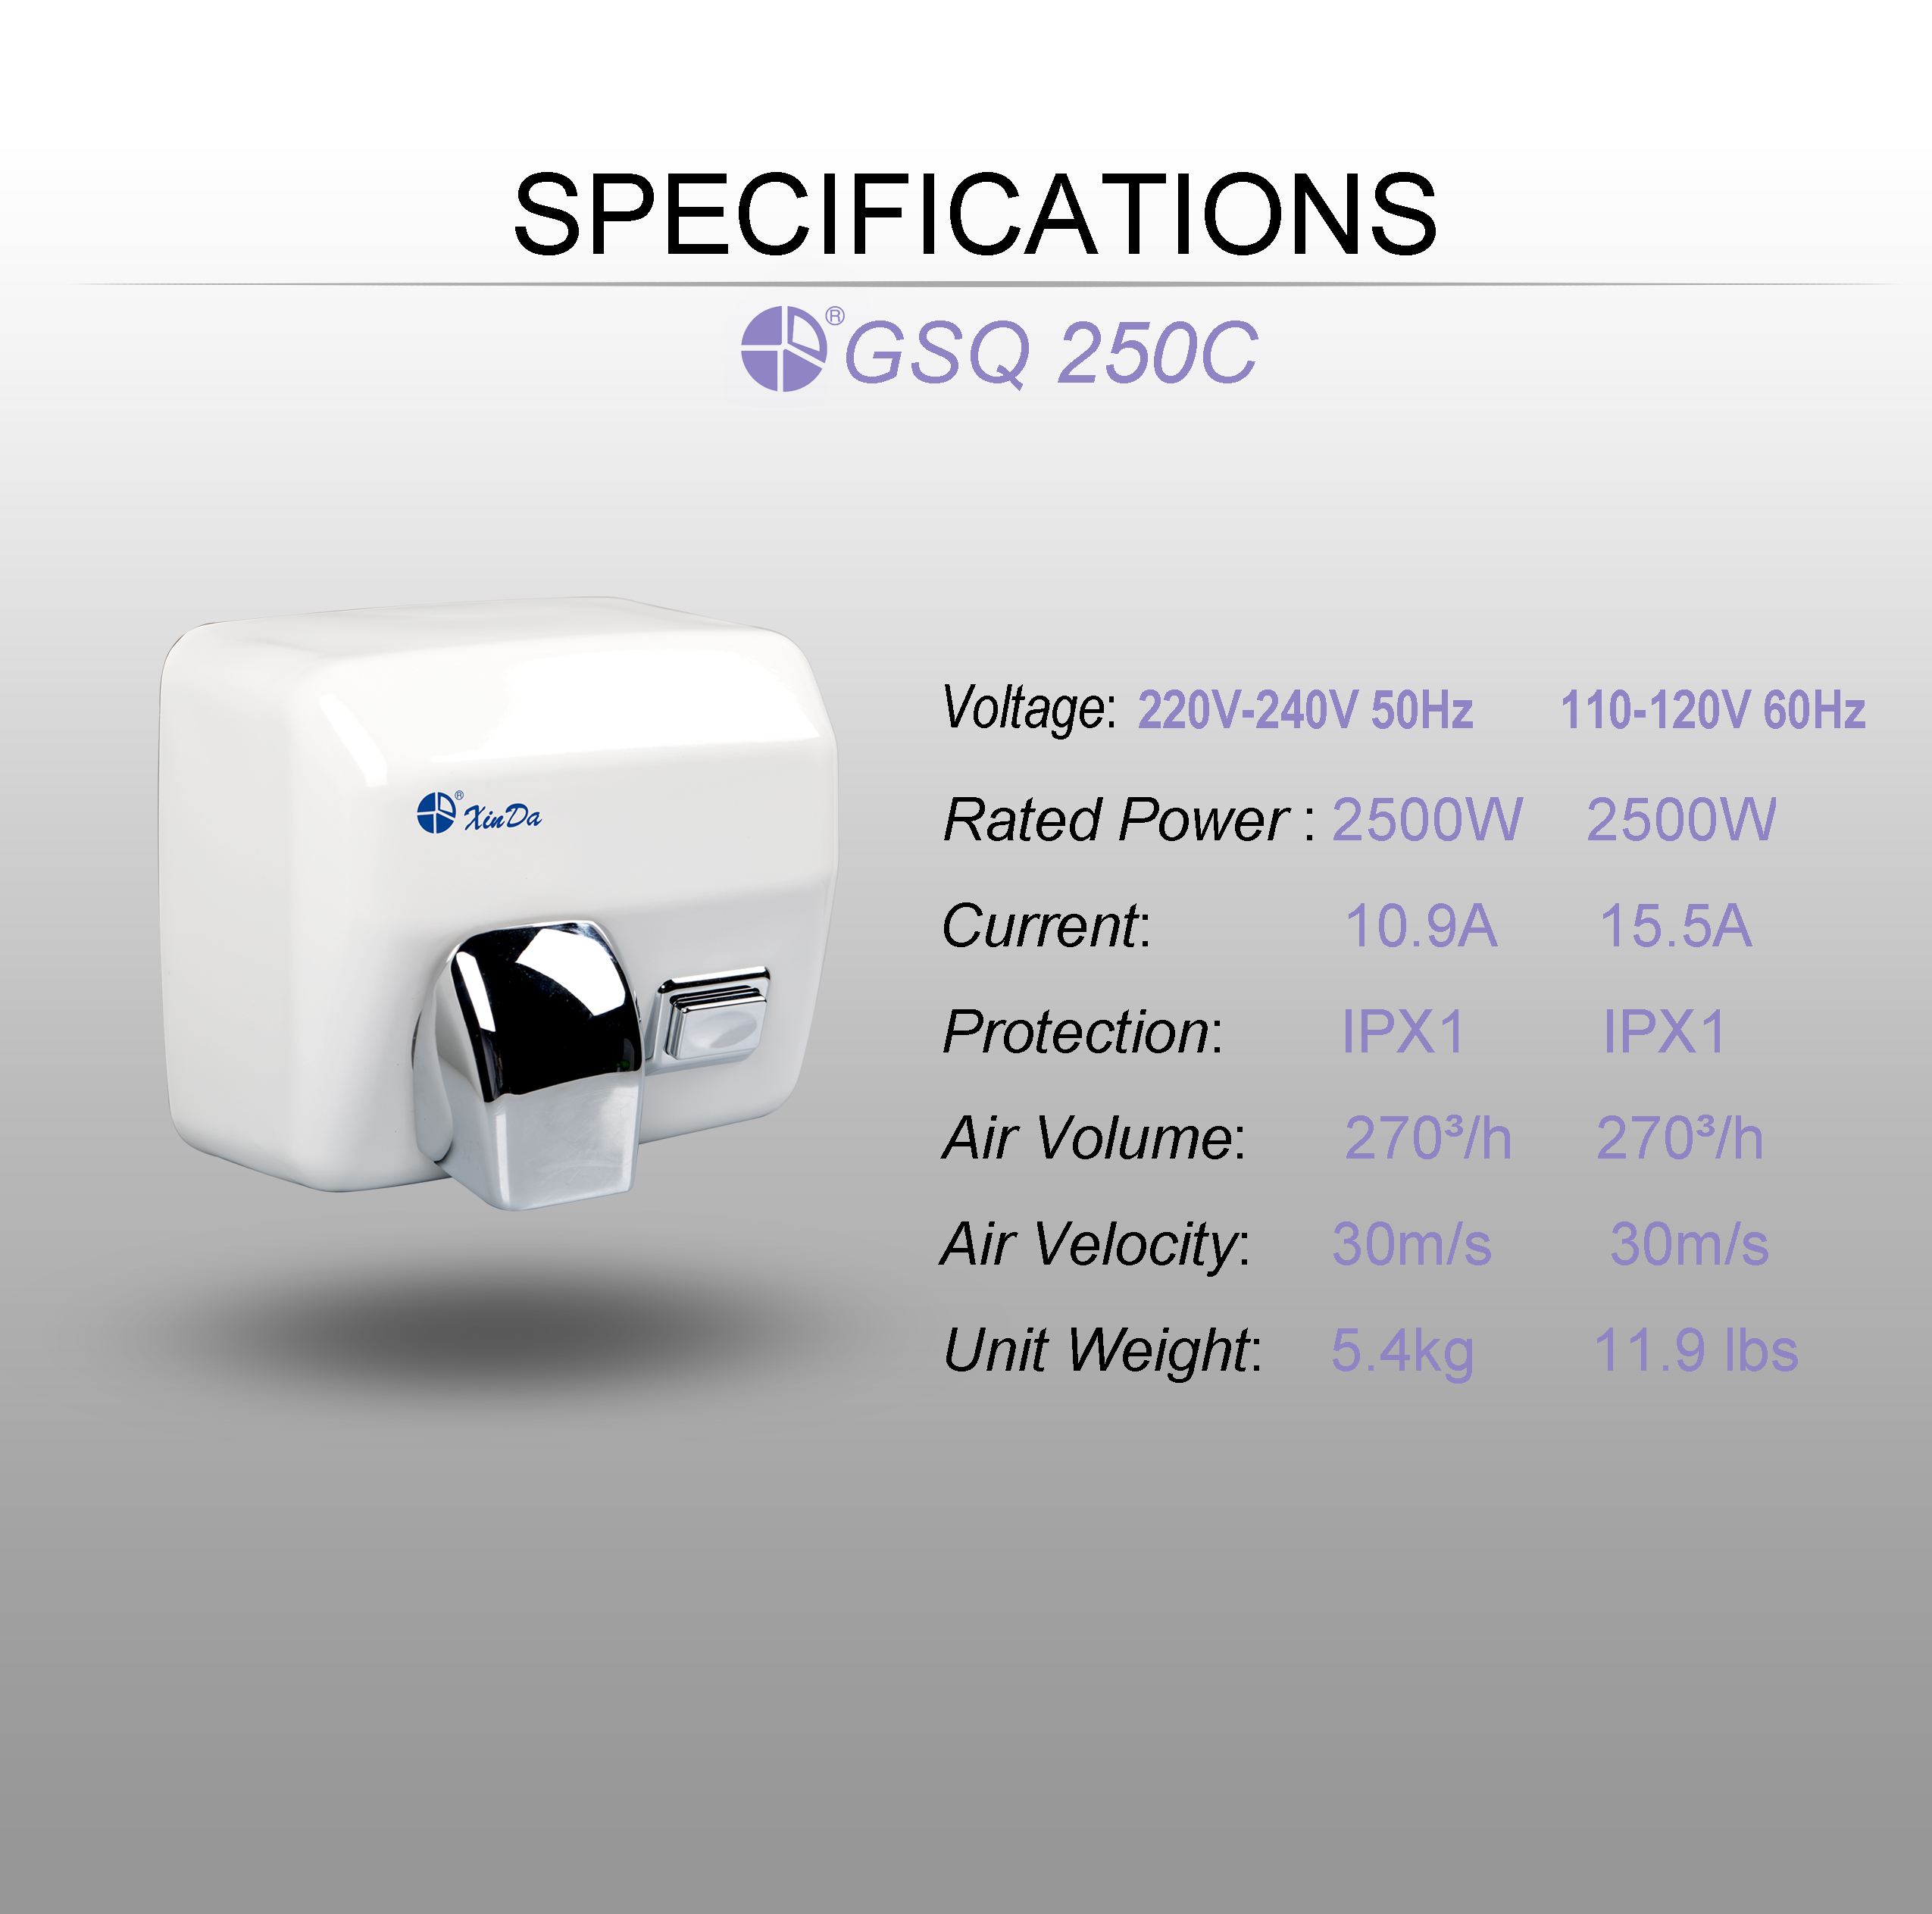 Los secadores de manos automáticos a batería de alta calidad al por mayor XinDa GSQ250C White Wholesale